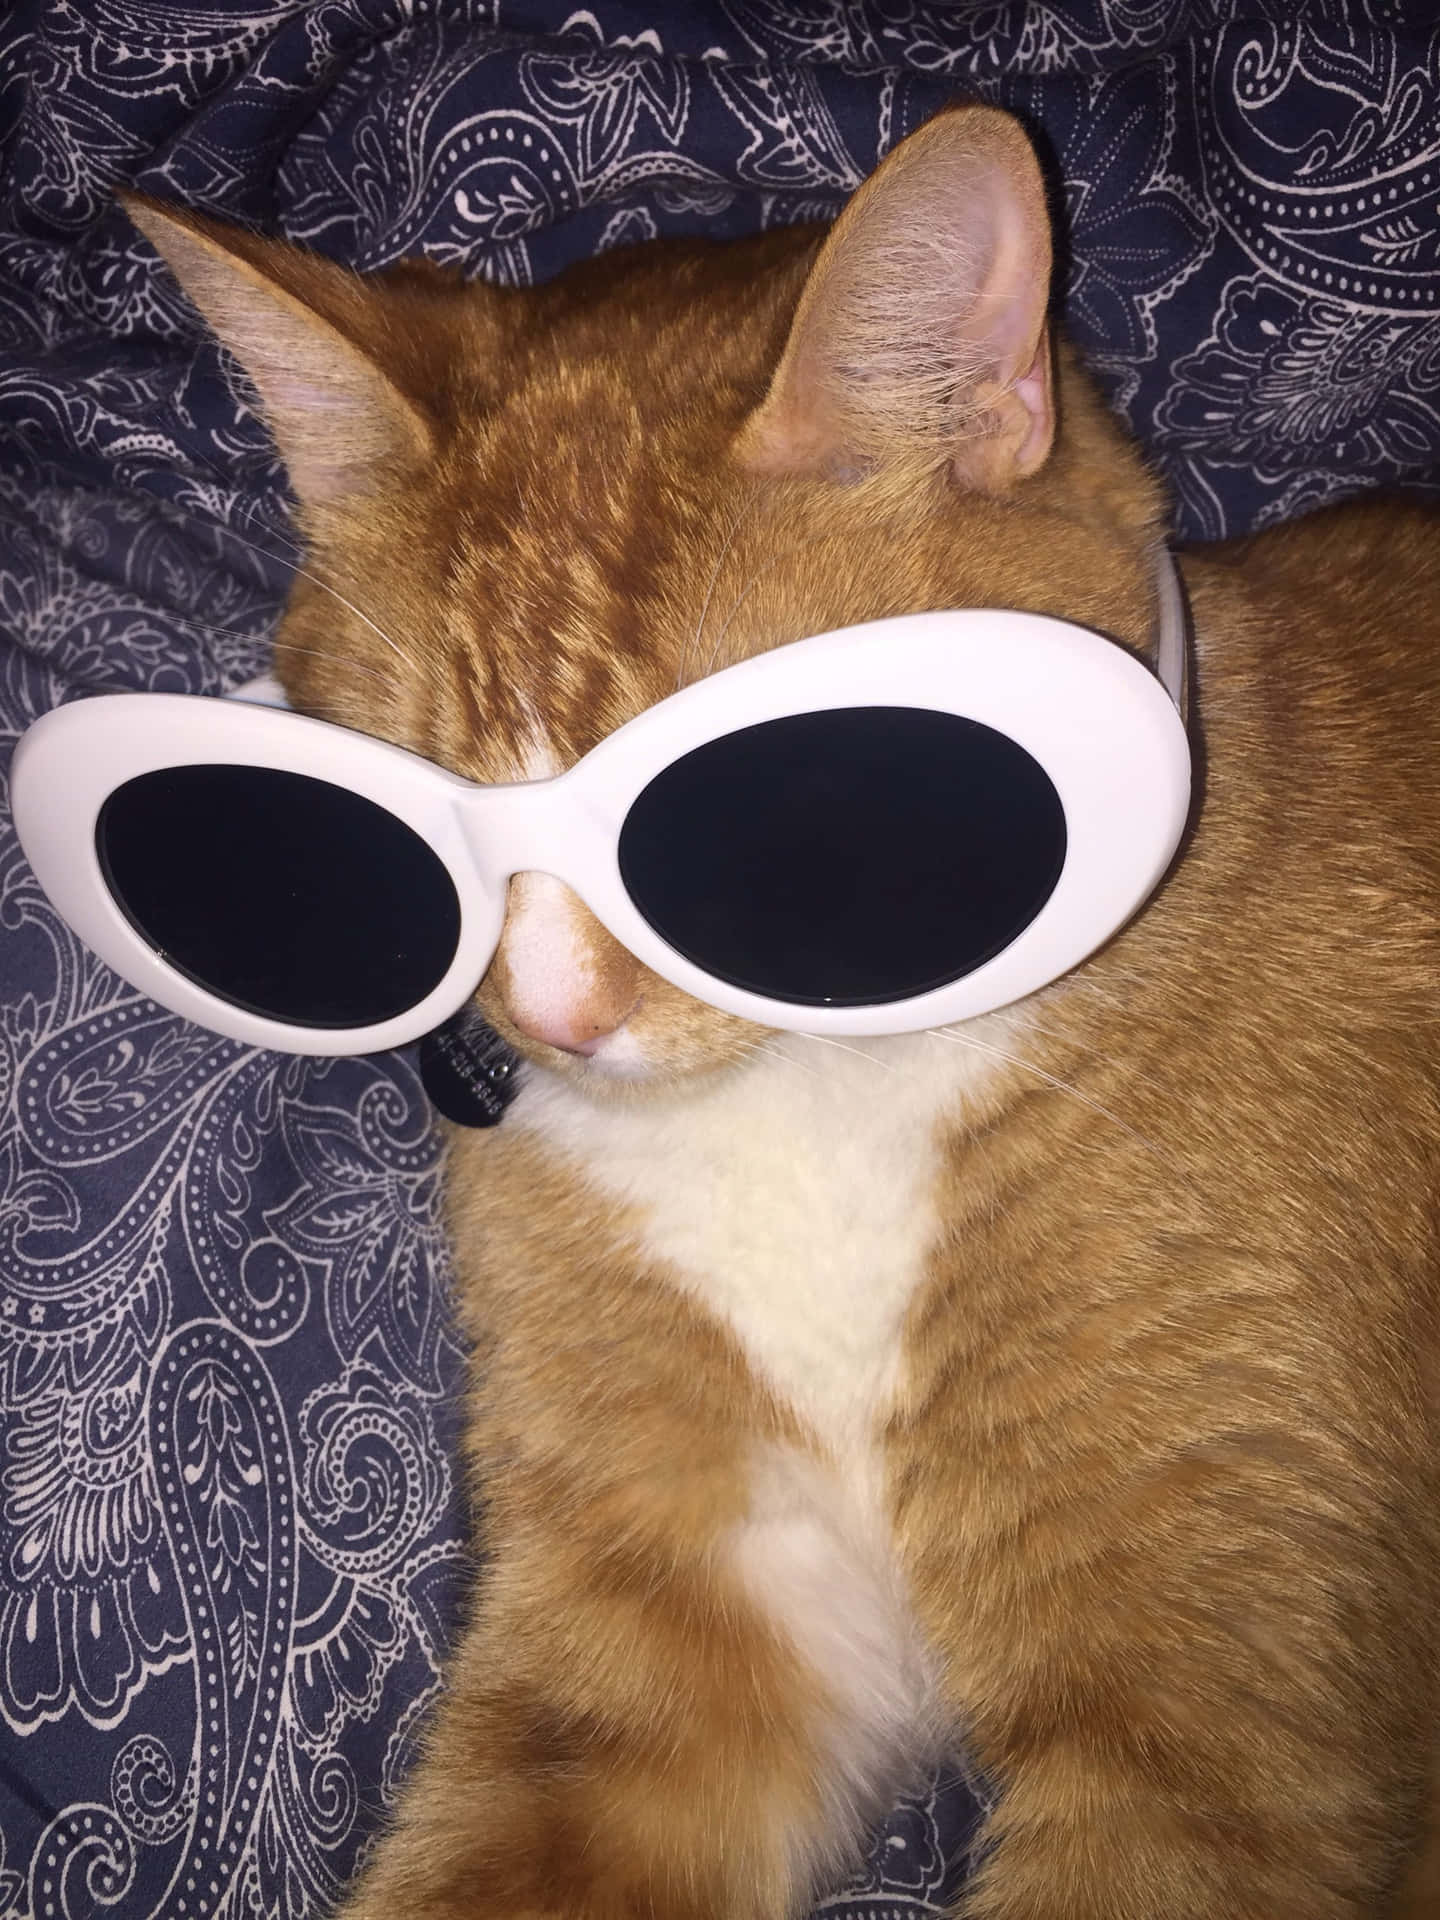 Großesonnenbrille Niedliche Katzen Dp Wallpaper